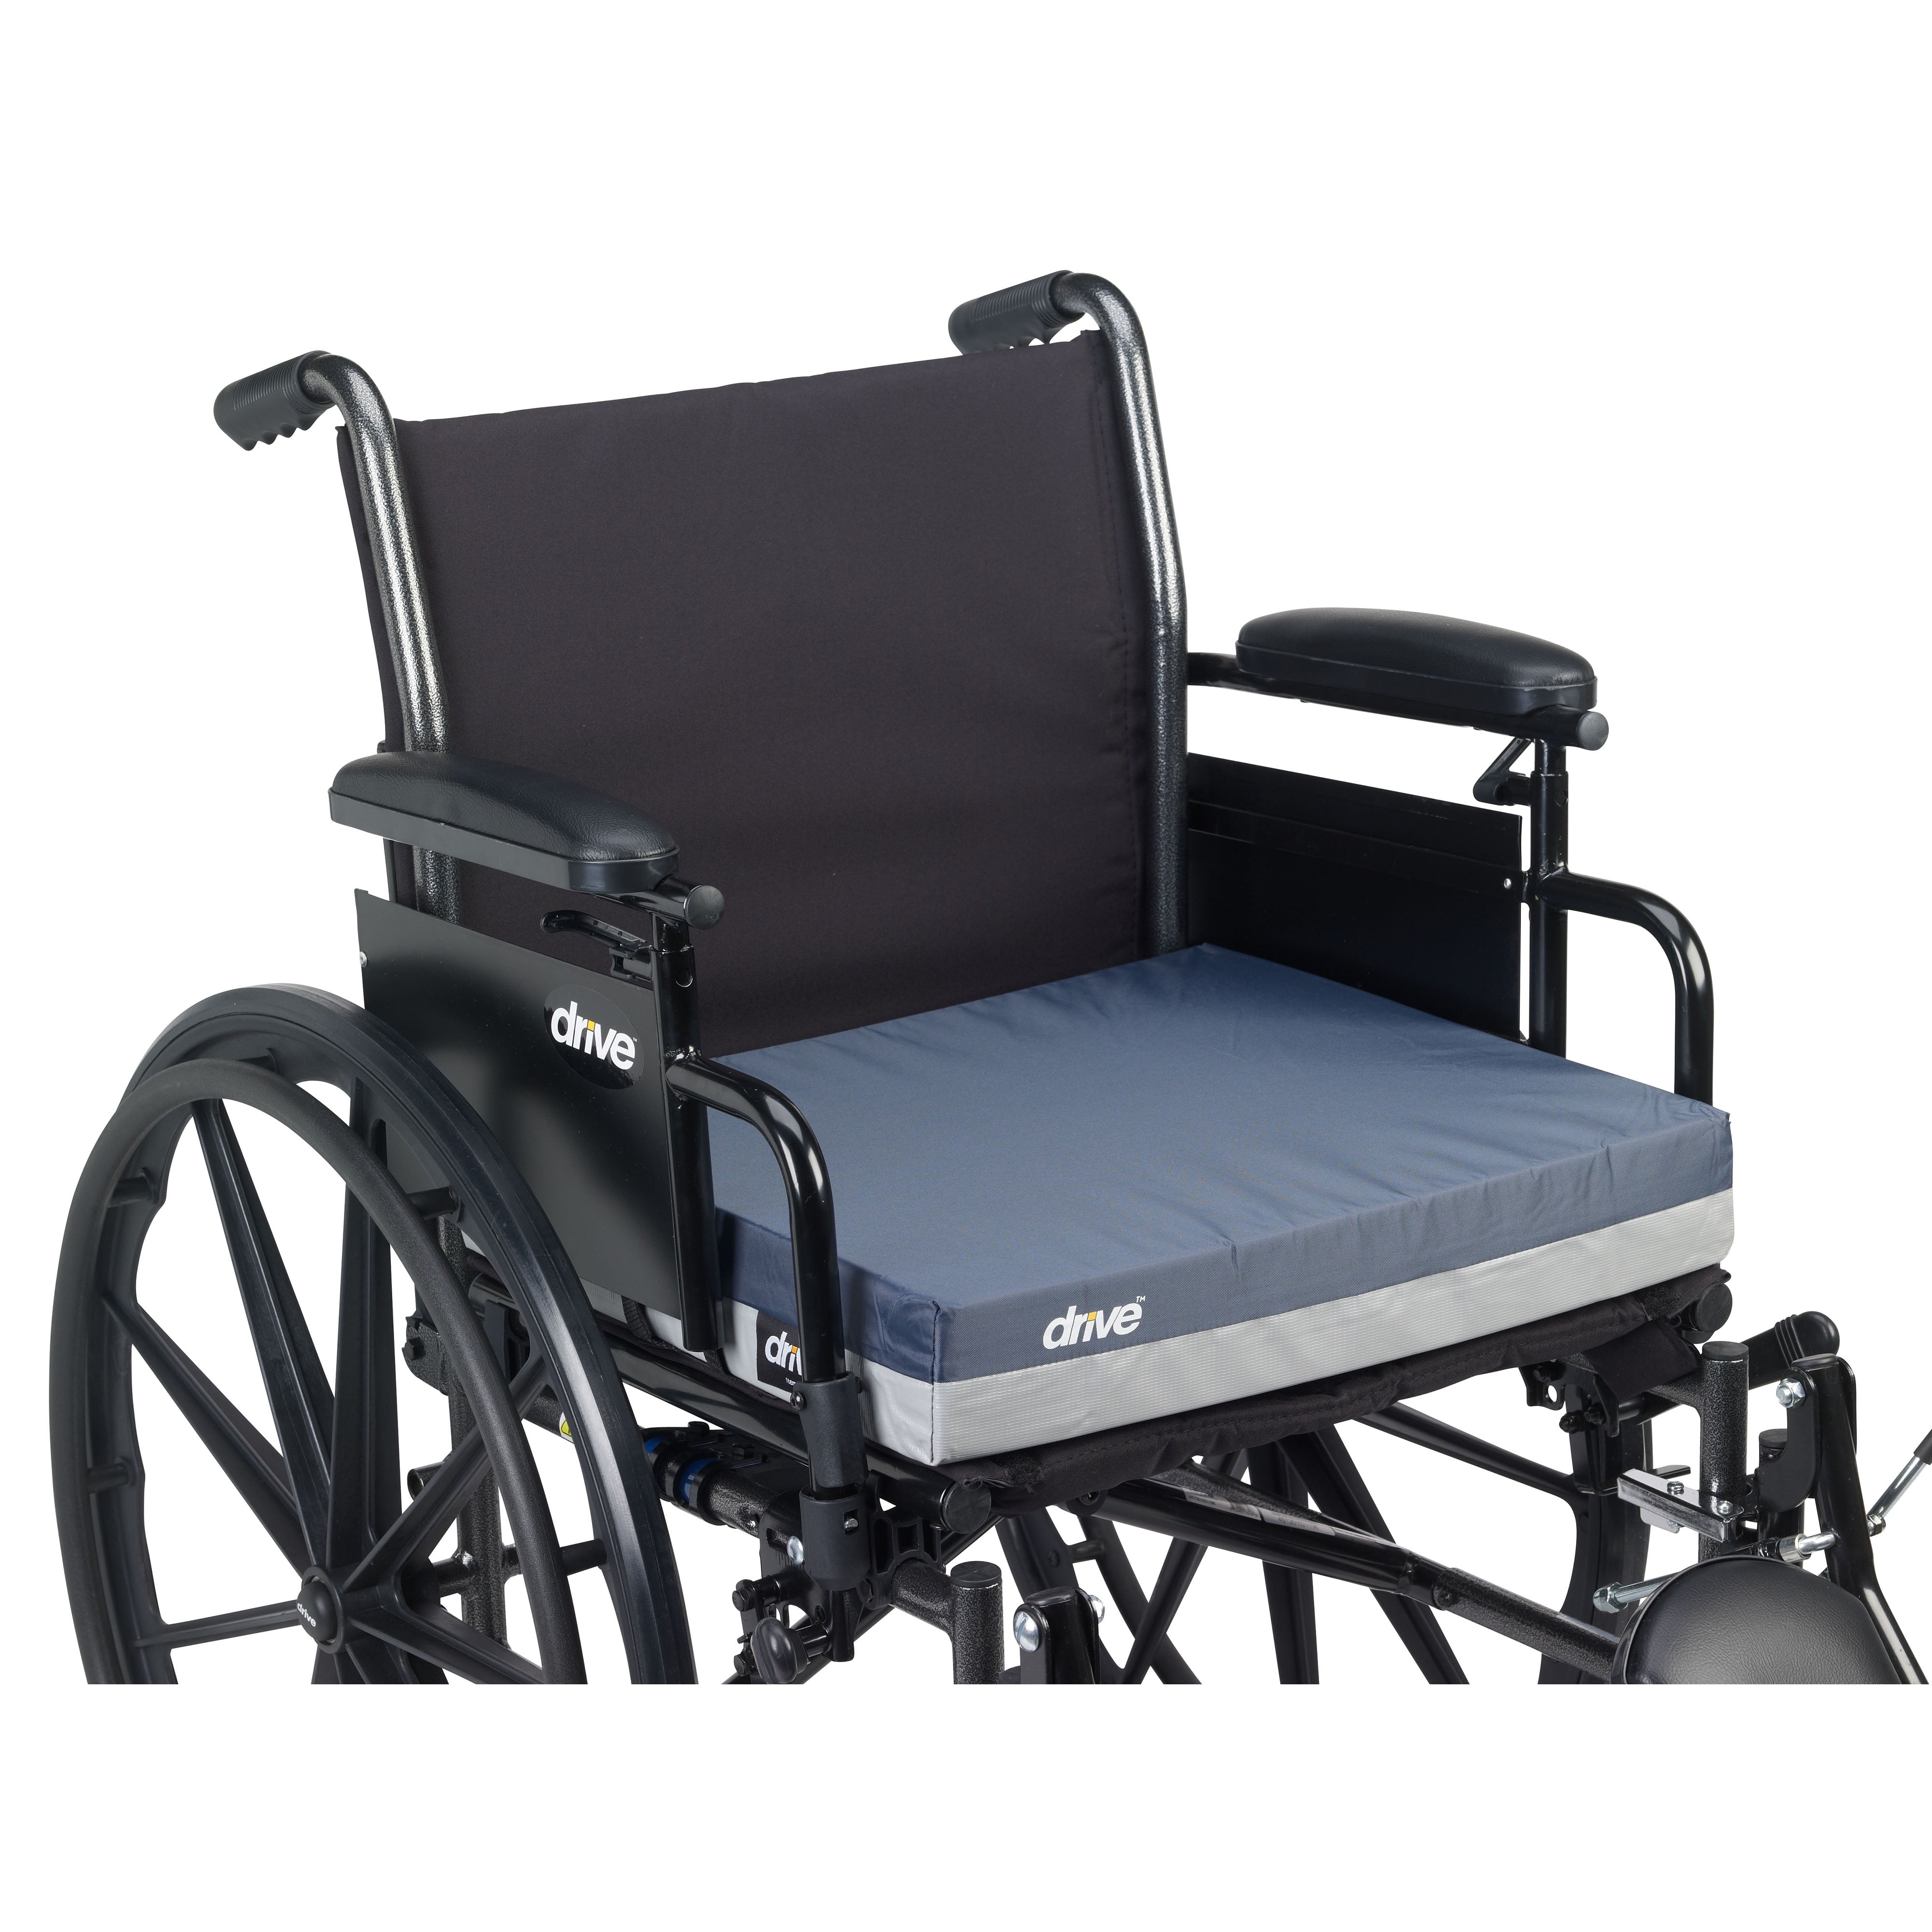 Bilt-Rite Mastex Health Wheelchair Back Cushion, Black, 18 Inch x